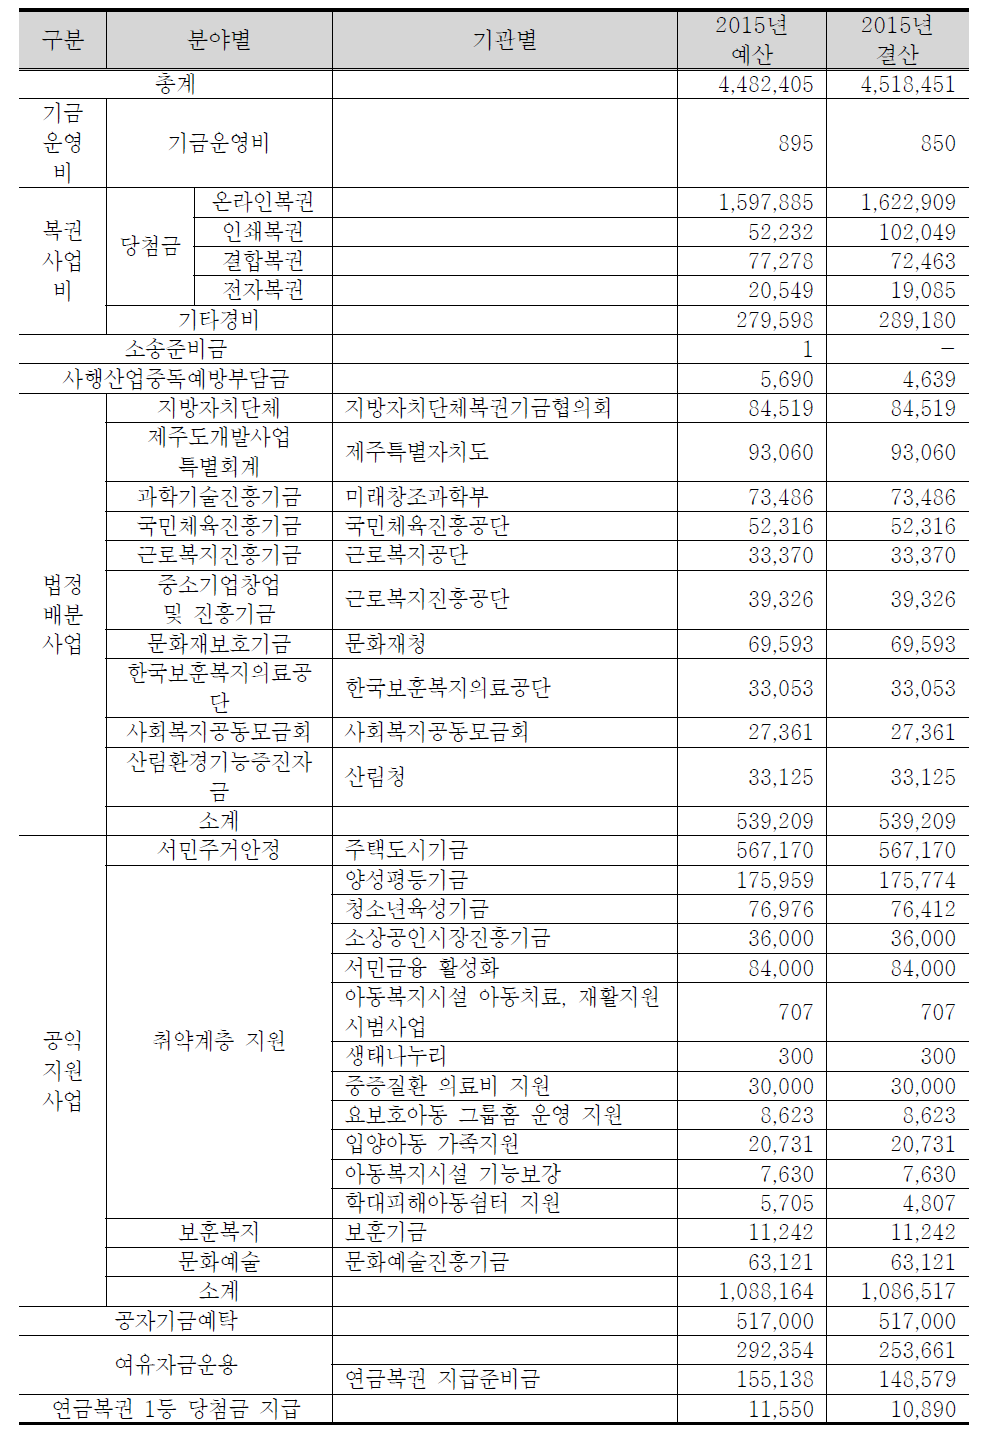 2015 복권기금 집행현황 (단위 : 백만원)